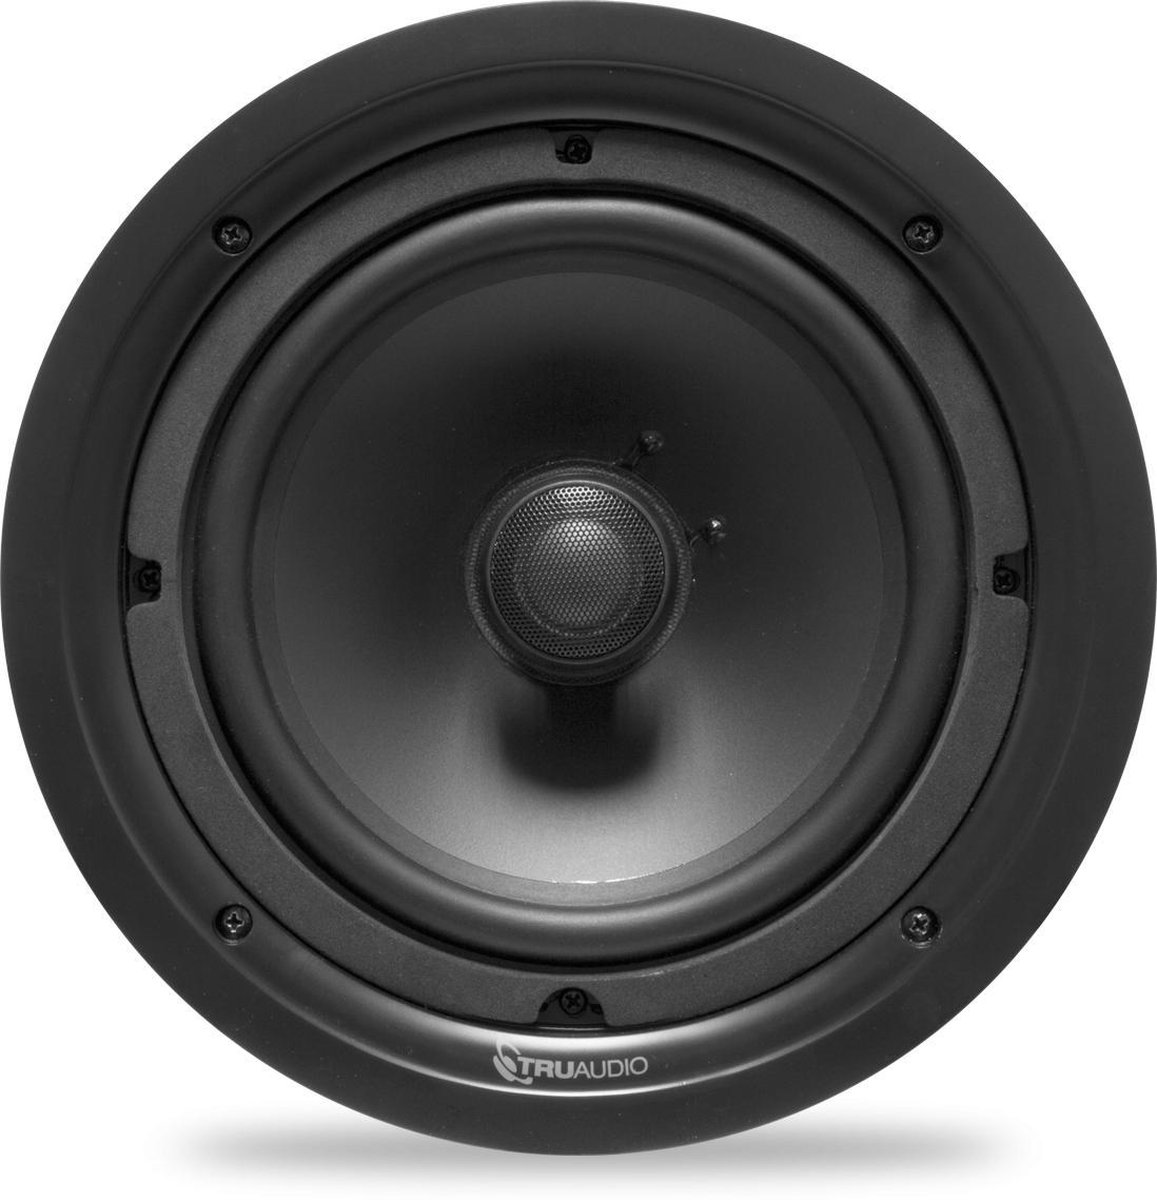 TruAudio - PP-8 - Phantom Series, 2-way in-ceiling speaker, 8 inch injected poly woofer